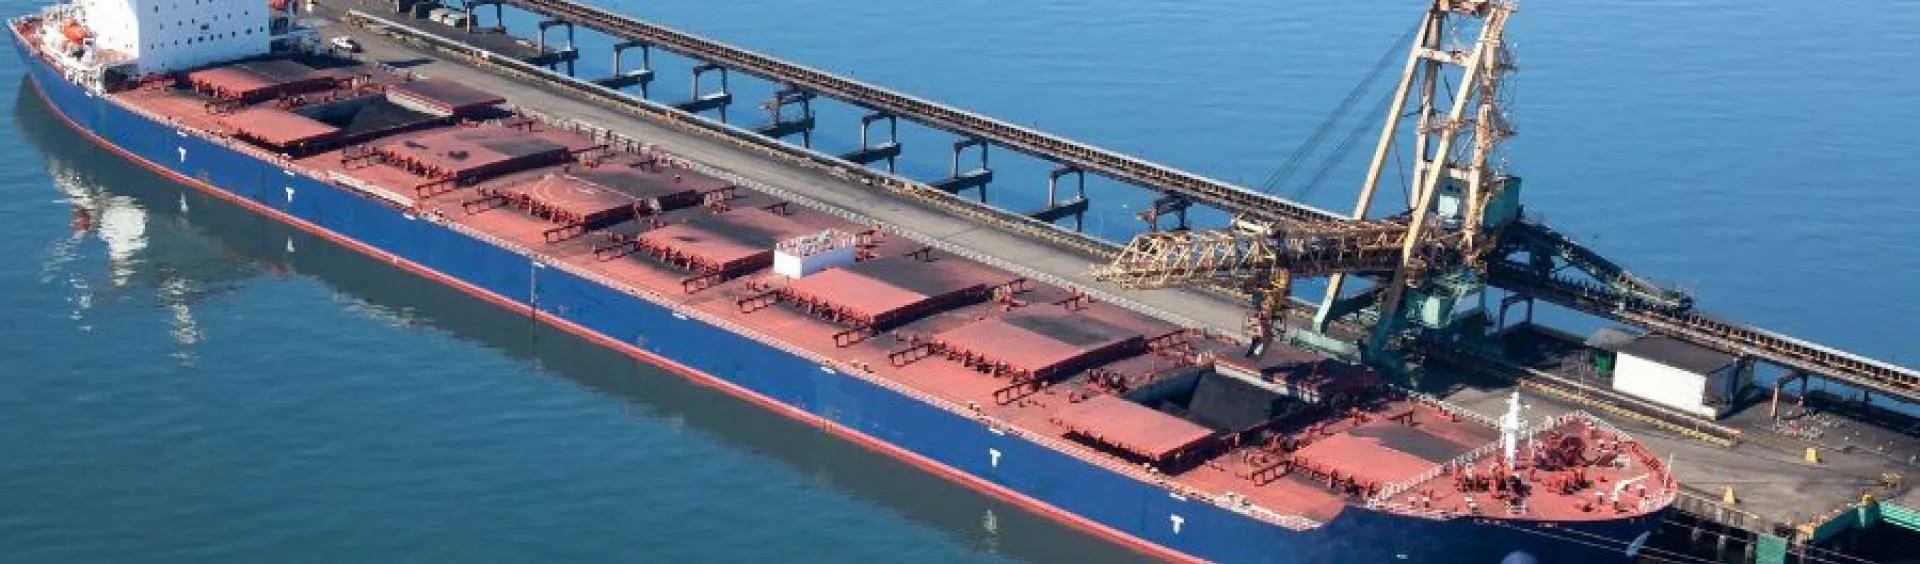 Bulk Cargo - Providing Logistics Services and Solutions